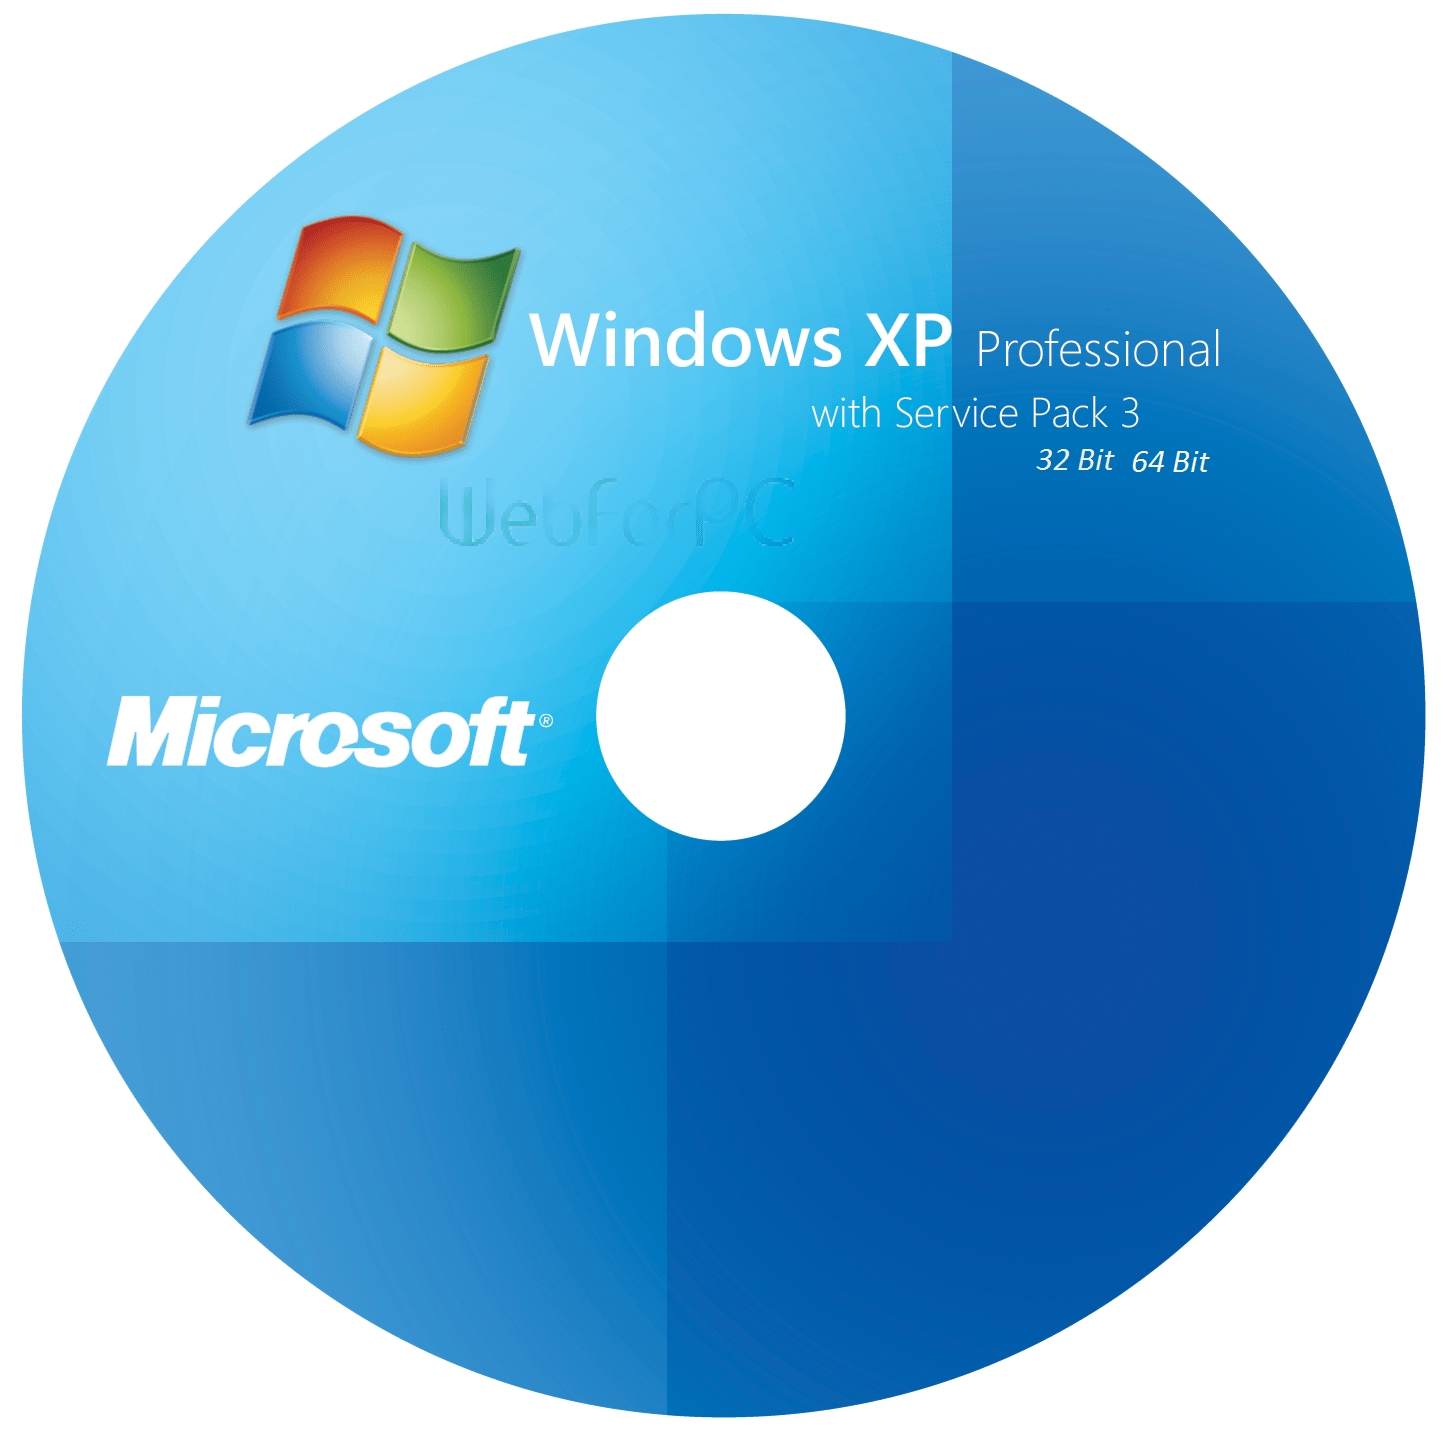 xp pro download microsoft